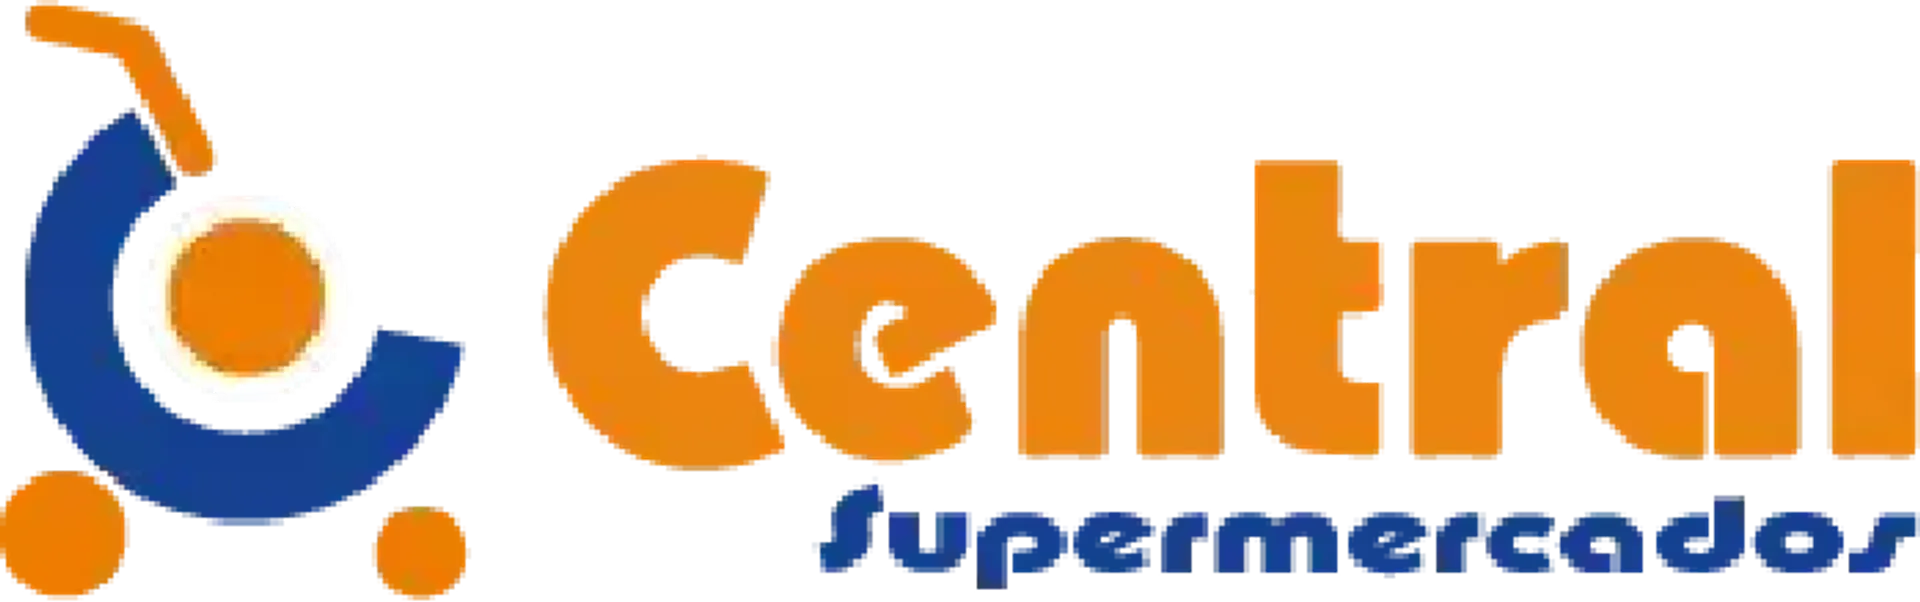 CENTRAL SUPERMERCADOS logo